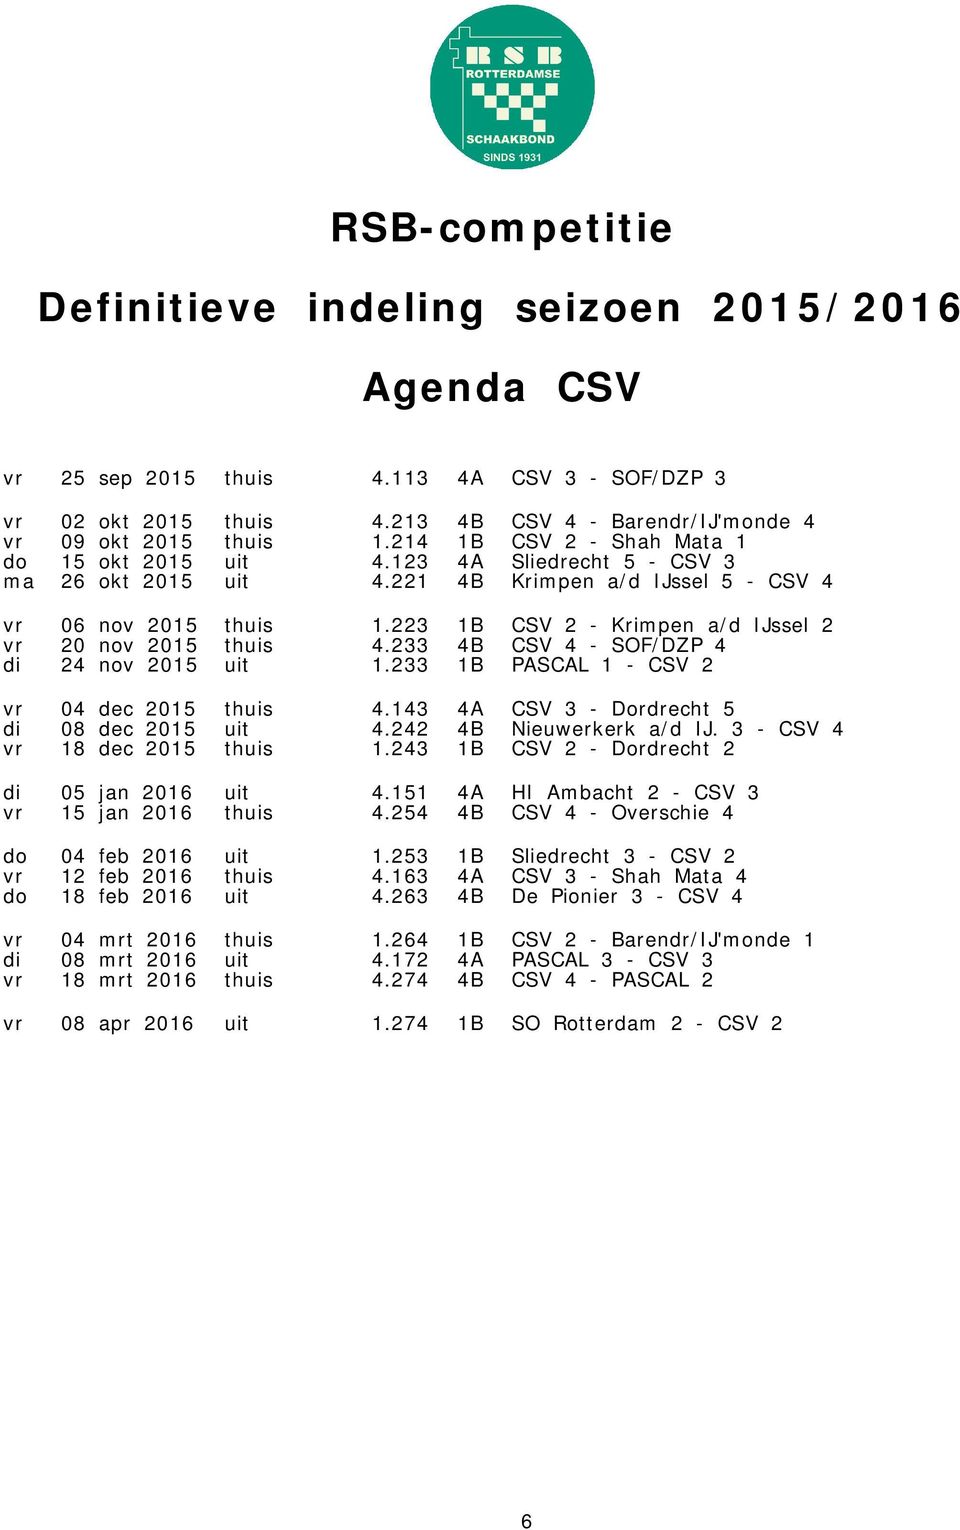 233 4B CSV 4 - SOF/DZP 4 di 24 nov 2015 uit 1.233 1B PASCAL 1 - CSV 2 vr 04 dec 2015 thuis 4.143 4A CSV 3 - Dordrecht 5 di 08 dec 2015 uit 4.242 4B Nieuwerkerk a/d IJ.